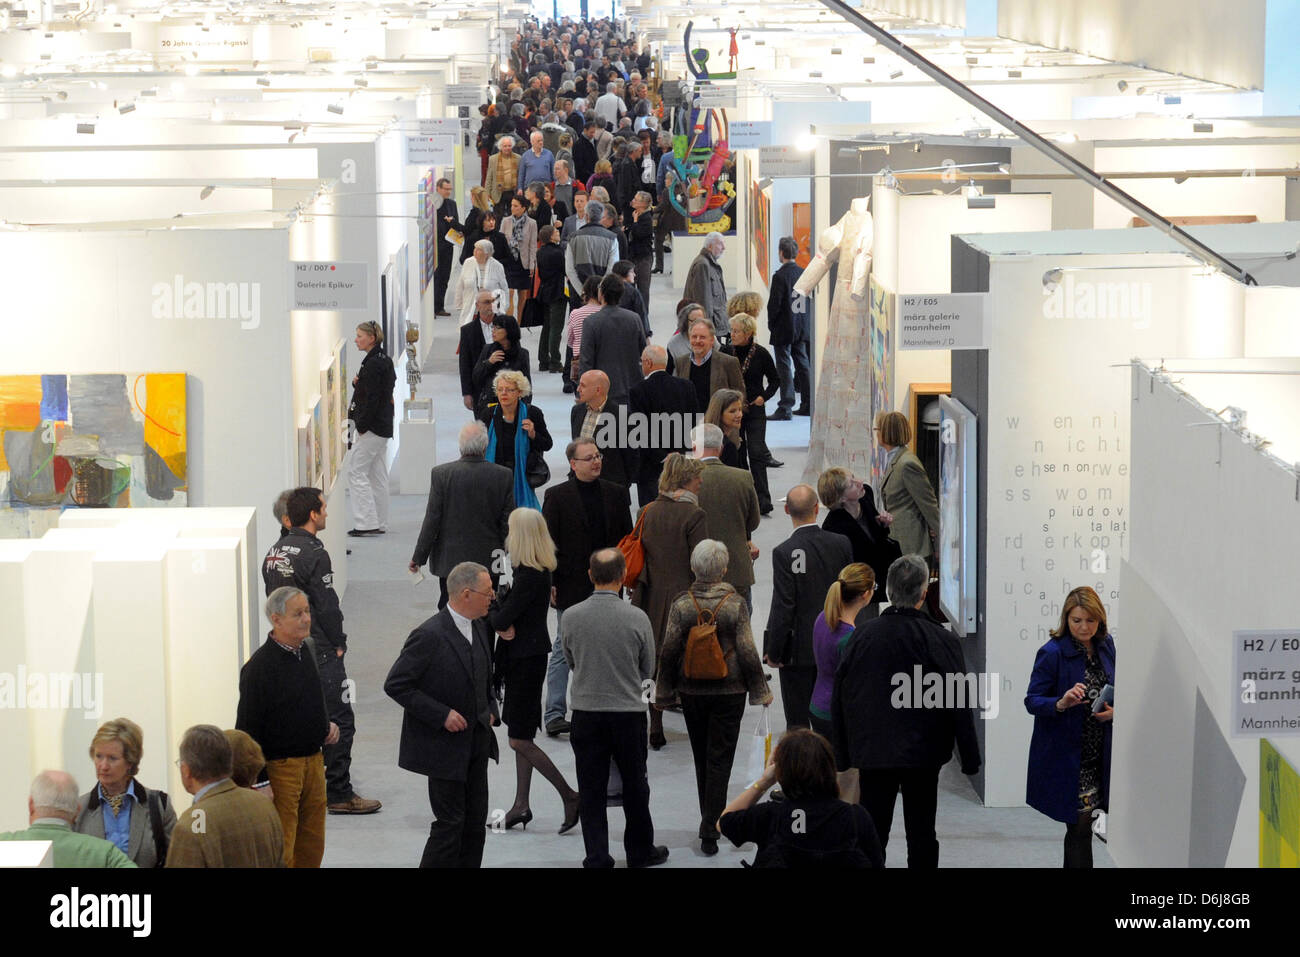 Molti visitatori partecipare all'apertura del nono arte Karlsruhe art fair a Karlsruhe, Germania, 07 marzo 2012. 222 gallerie saranno mostra circa 30.000 opere da 1.500 artisti provenienti da 08 fino a 11 marzo. Foto: ULI DECK Foto Stock